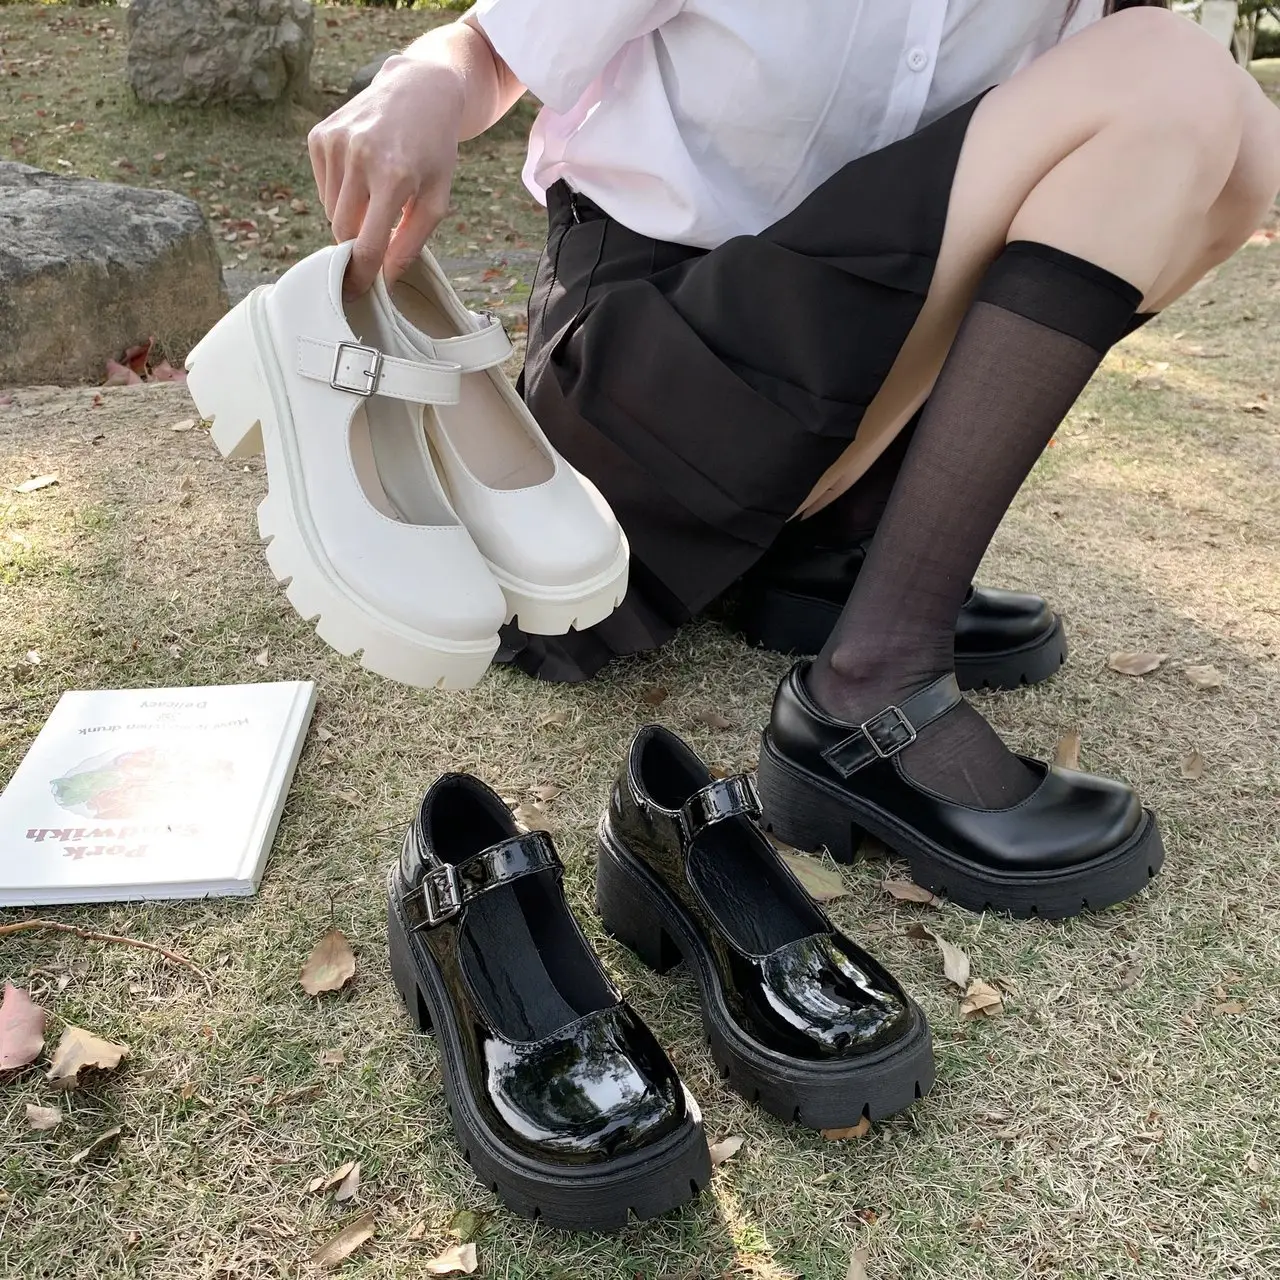 Недорогие модные женские туфли в японском стиле на среднем каблуке и платформе в стиле "Лолита" для женщин